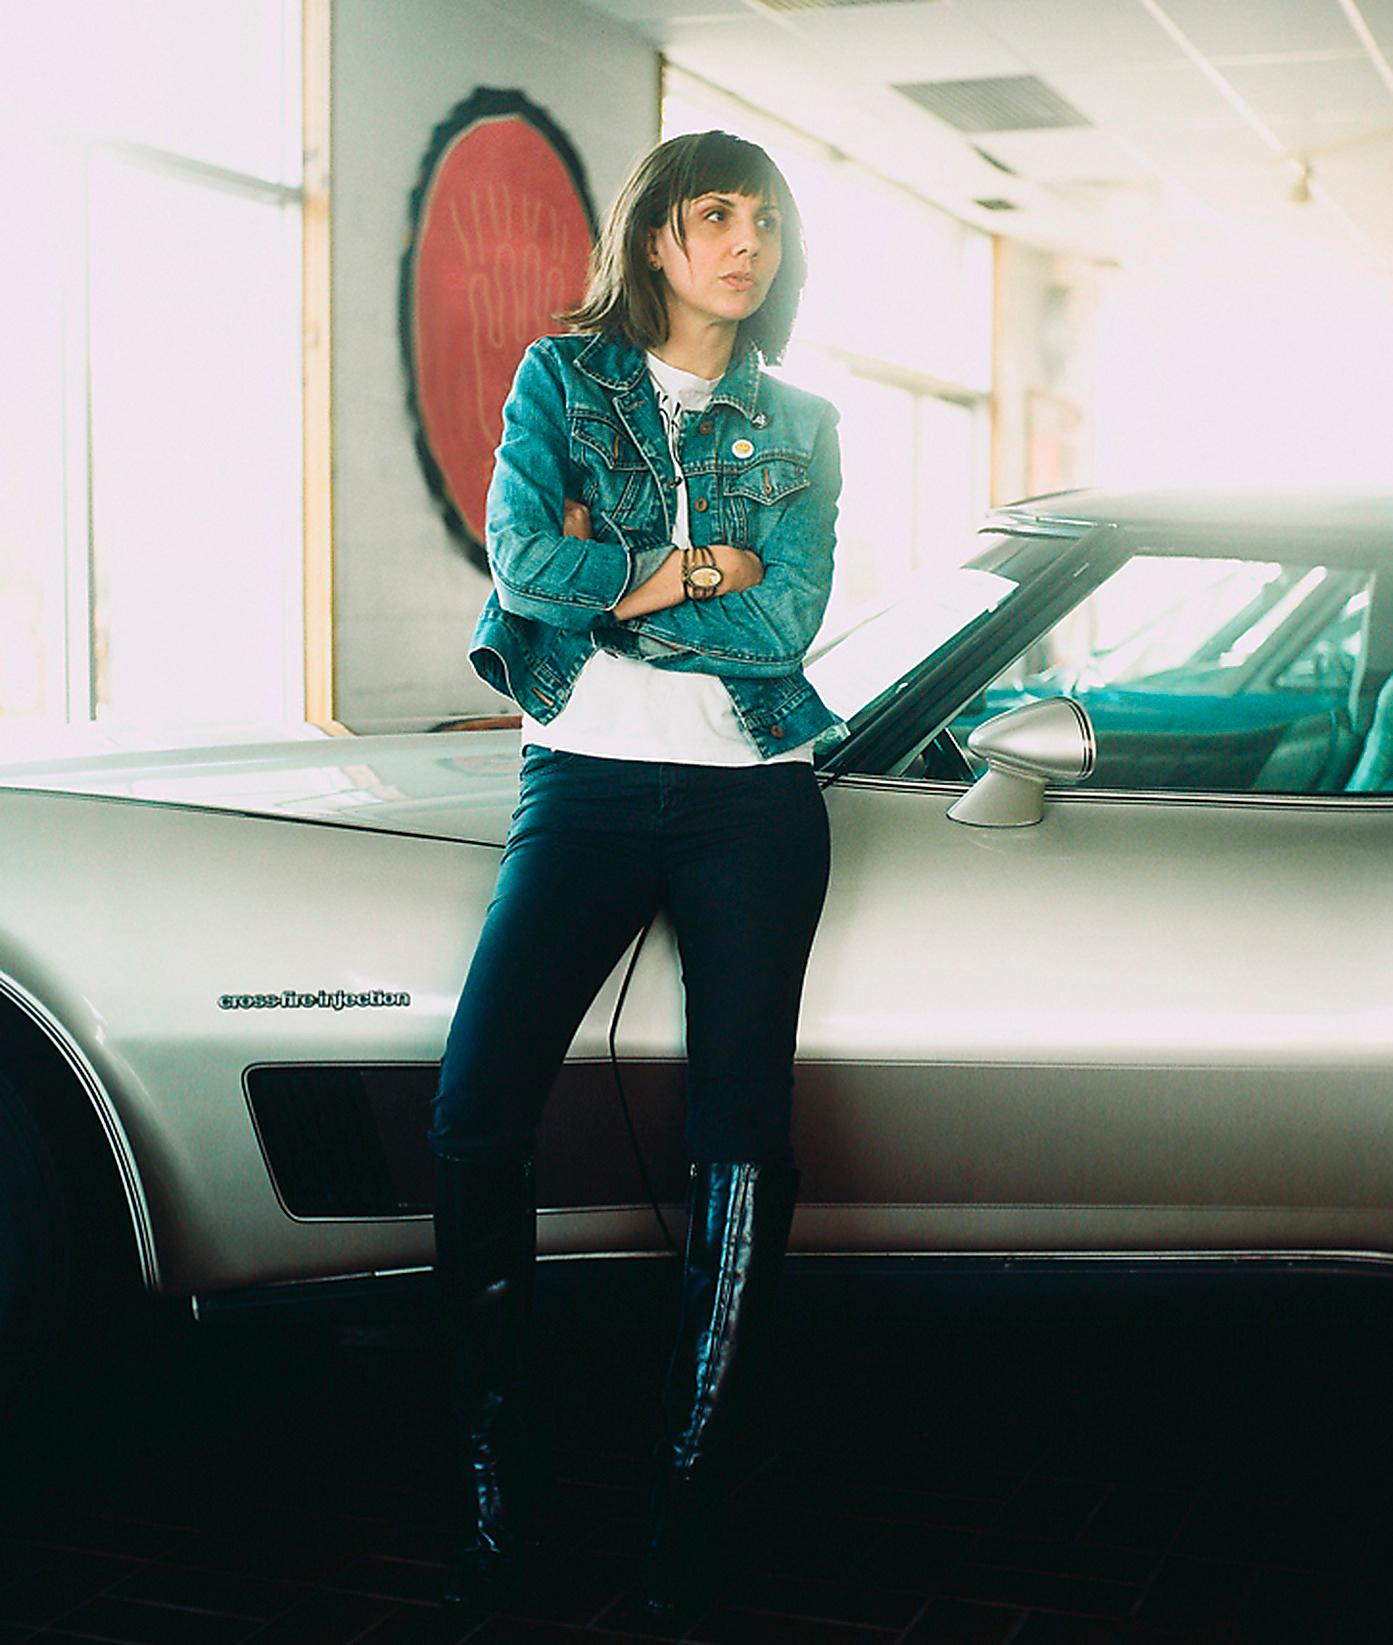 Musikkritikern Jessica Hopper låter den kvinnliga blicken ligga som ett raster över texterna. Foto: Featherproof